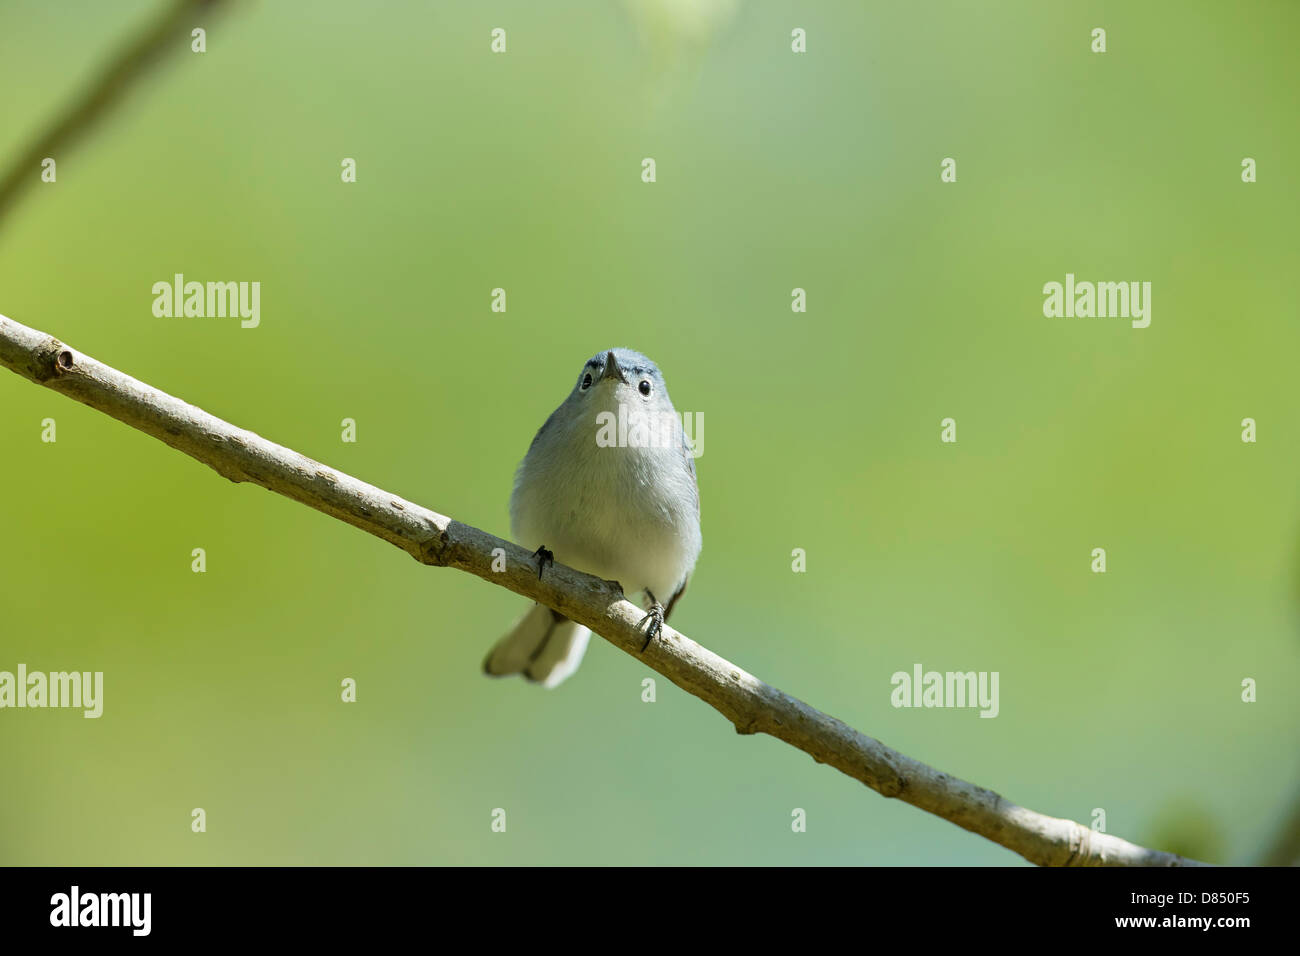 Petit oiseau chanteur perché sur une branche avec arrière-plan agréable - Gobemoucheron gris-bleu Polioptila caerulea Banque D'Images